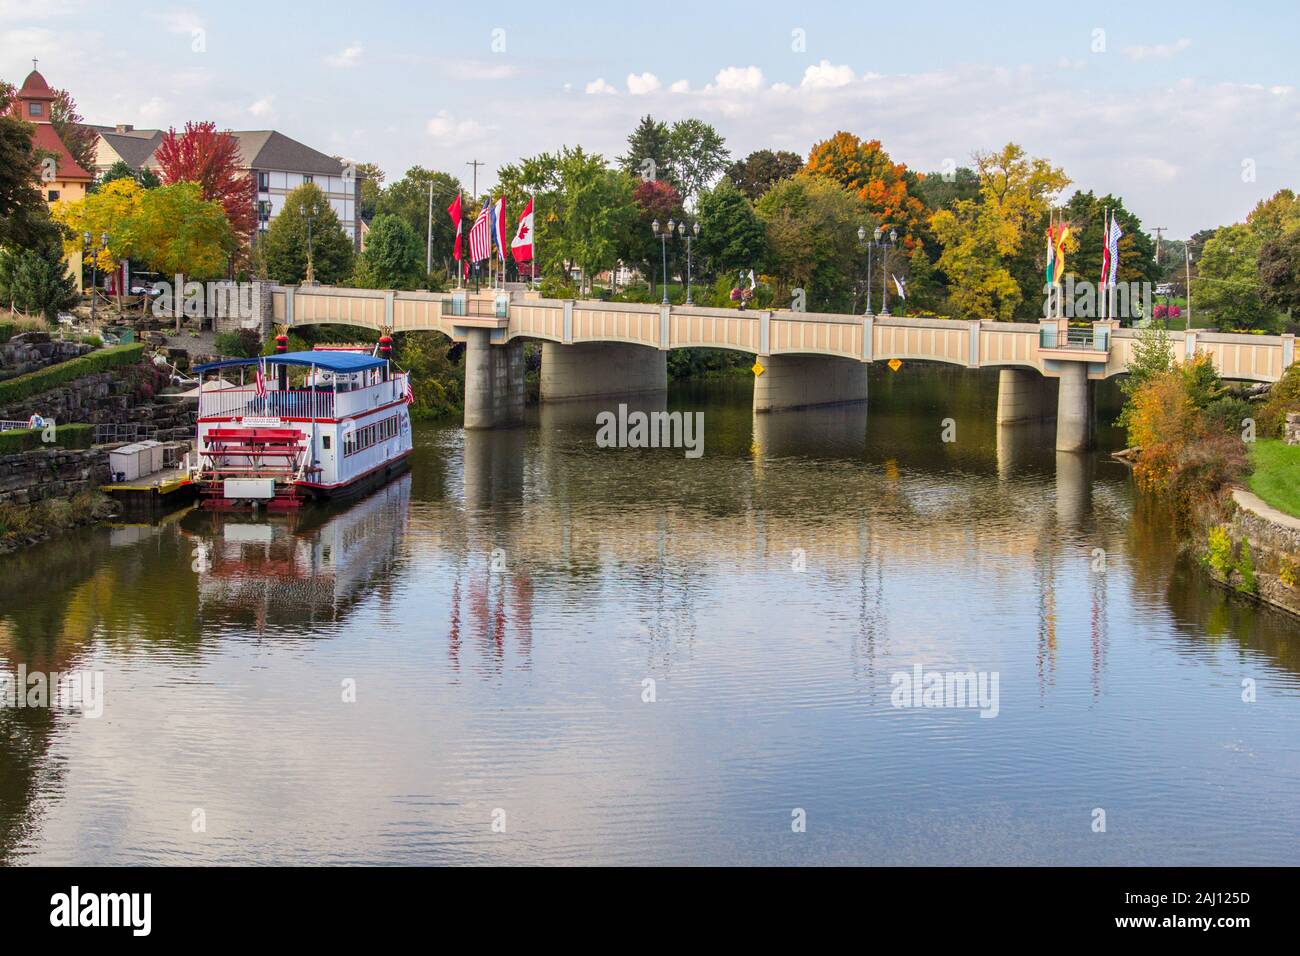 Frankenmuth, Michigan, États-Unis - Frankenmuth paysage urbain avec la Belle Riverboat bavaroise. Frankenmuth est la deuxième ville touristique la plus populaire du Michigan. Banque D'Images